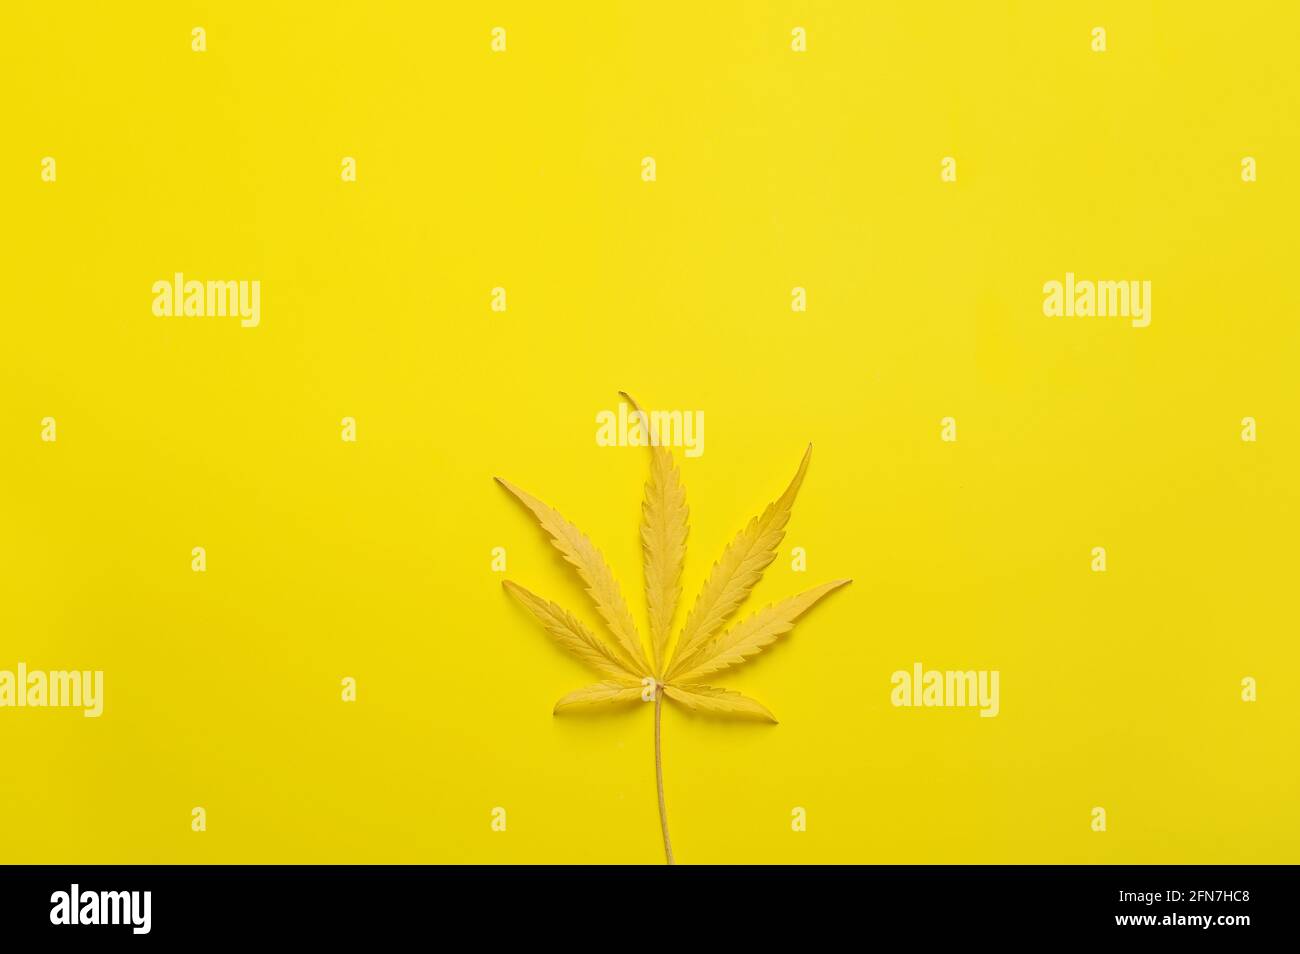 Feuille de cannabis au goût de citron. Plante de marijuana fraîche sur fond jaune. Chanvre récréation, usage médical, légalisation. Banque D'Images